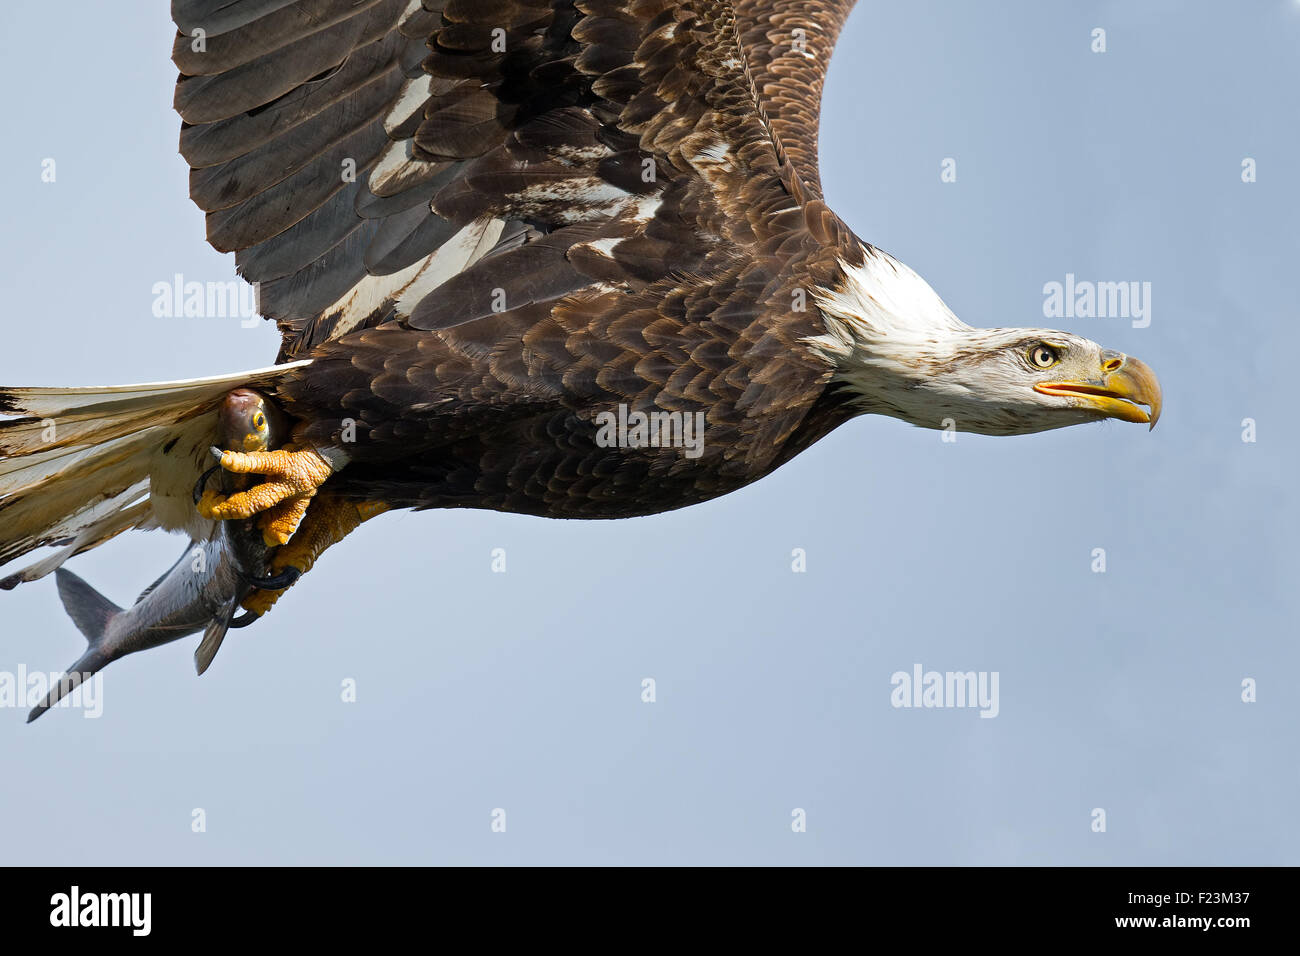 Weißkopfseeadler im Flug mit Fisch in Krallen Stockfoto